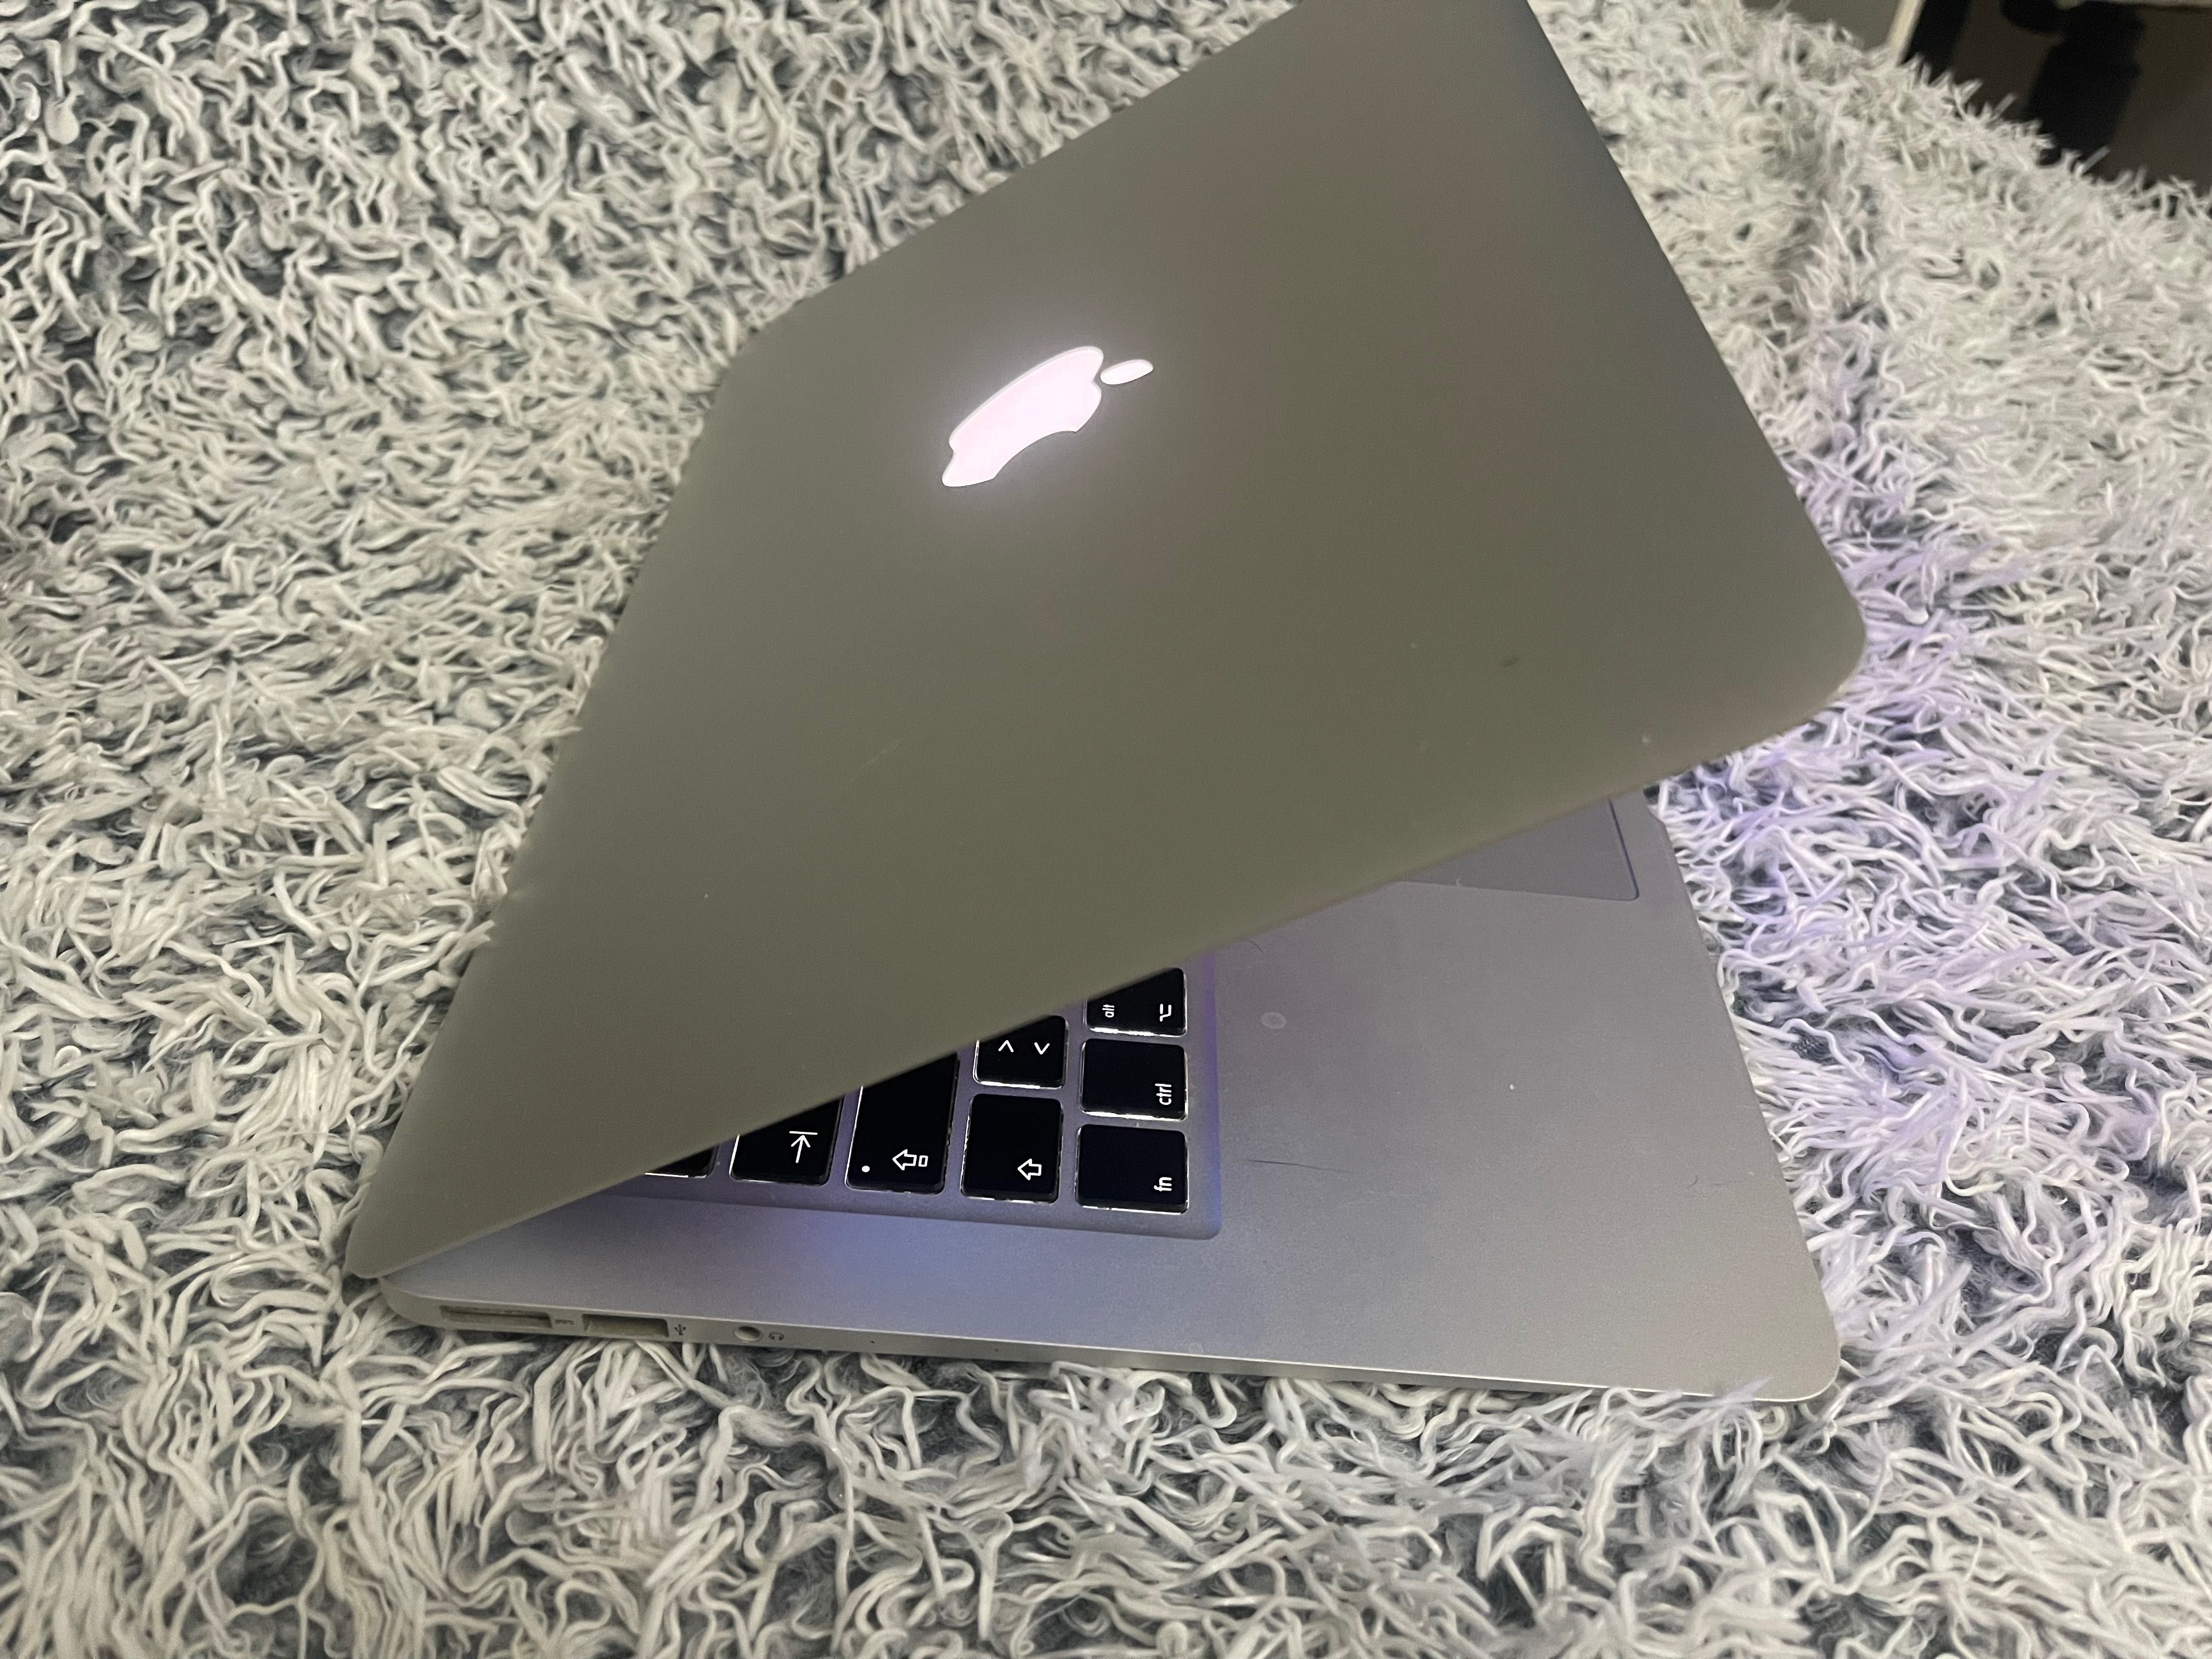 MacBook Air 13”, an 2017